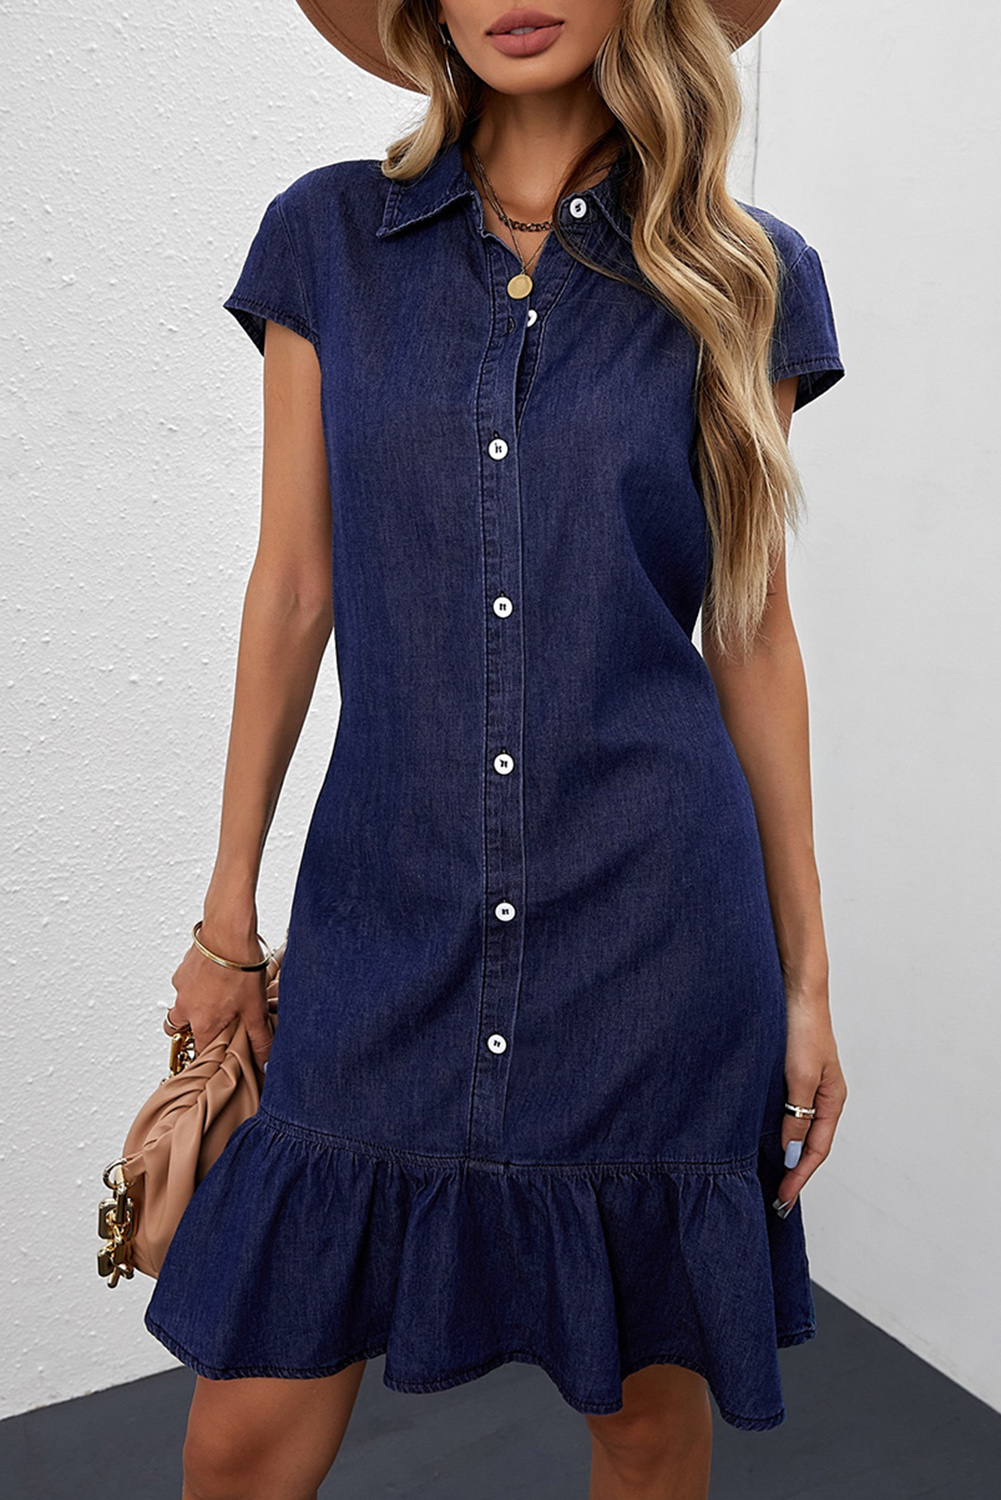 Blue Cap Sleeve Button Front Denim Mini Dress - (US 4-6)S